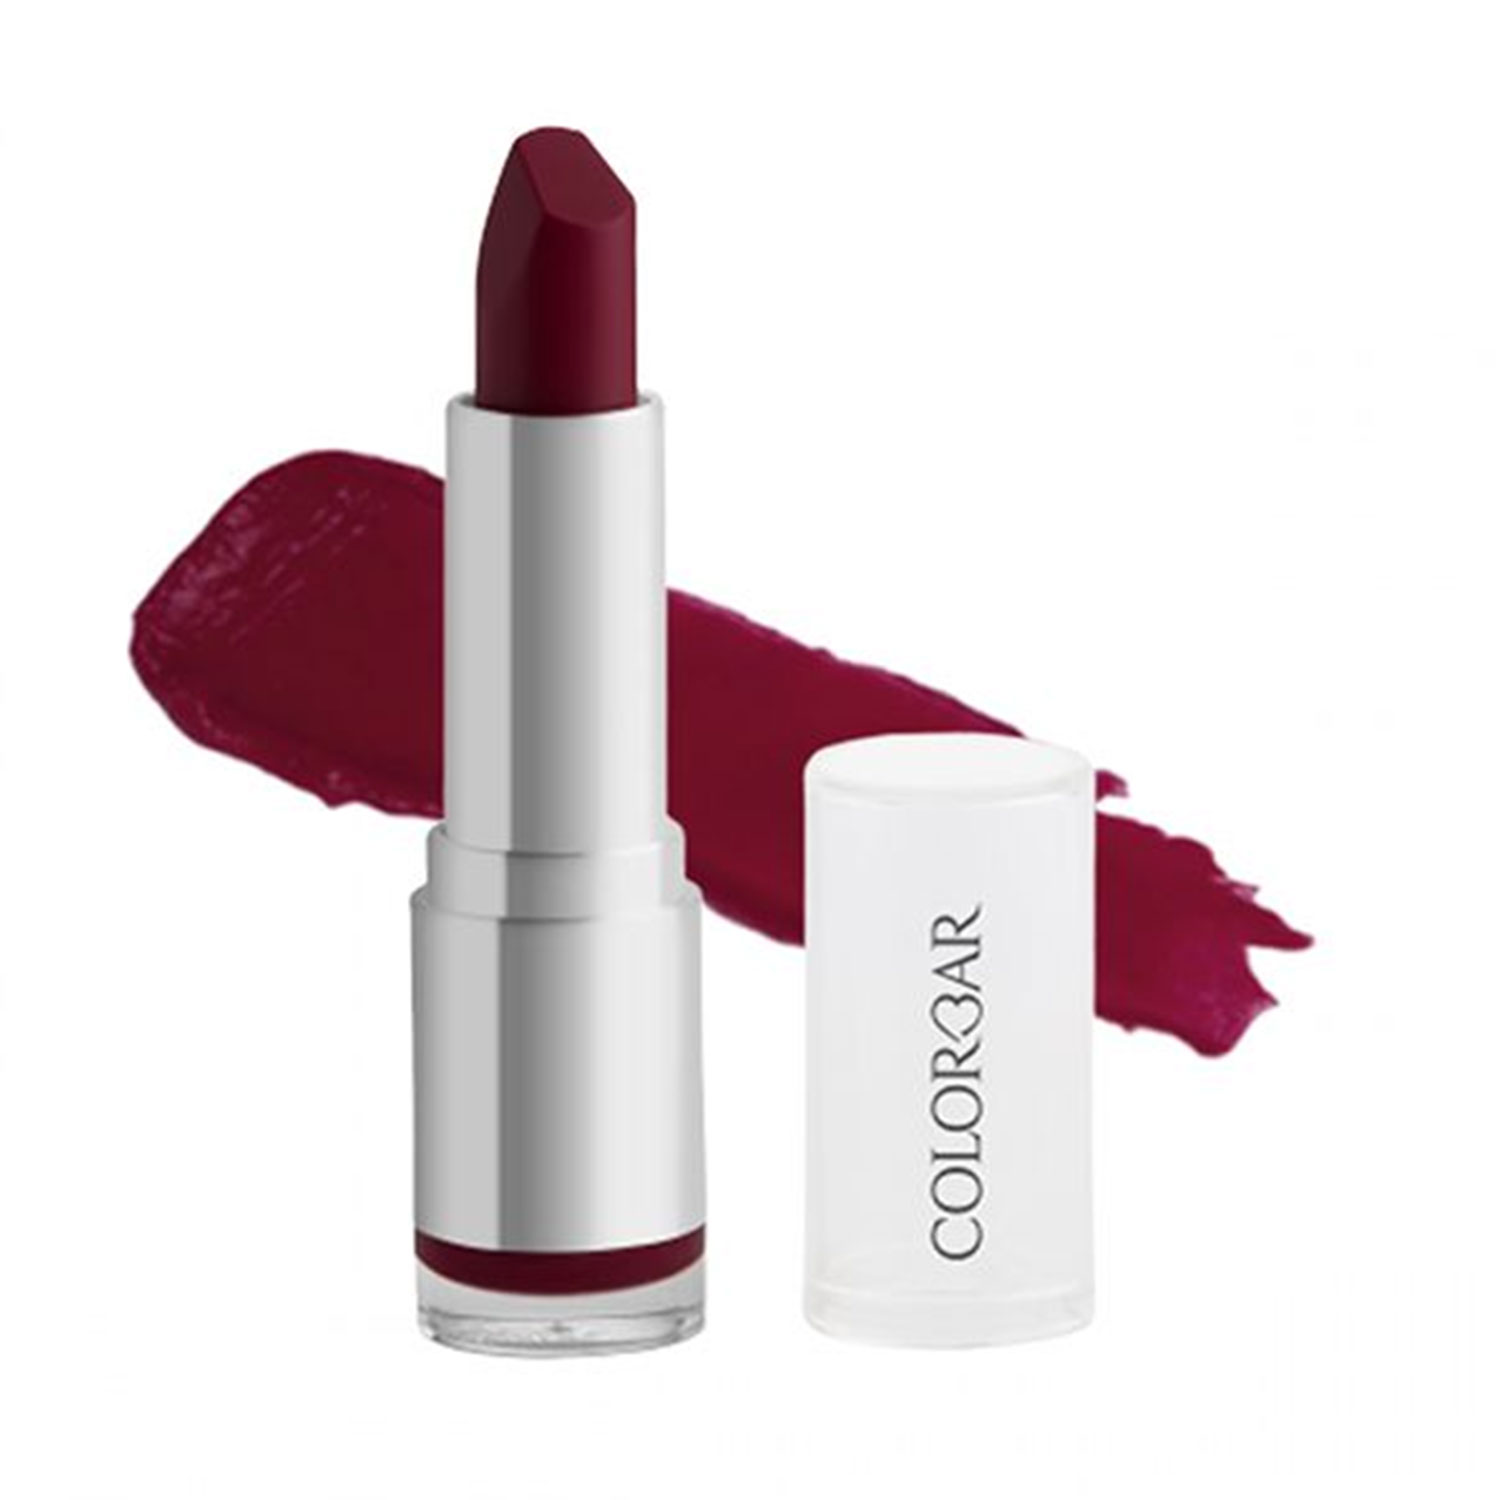 Colorbar Velvet Matte Lipstick, 4.2gm-Rum Raisin 041